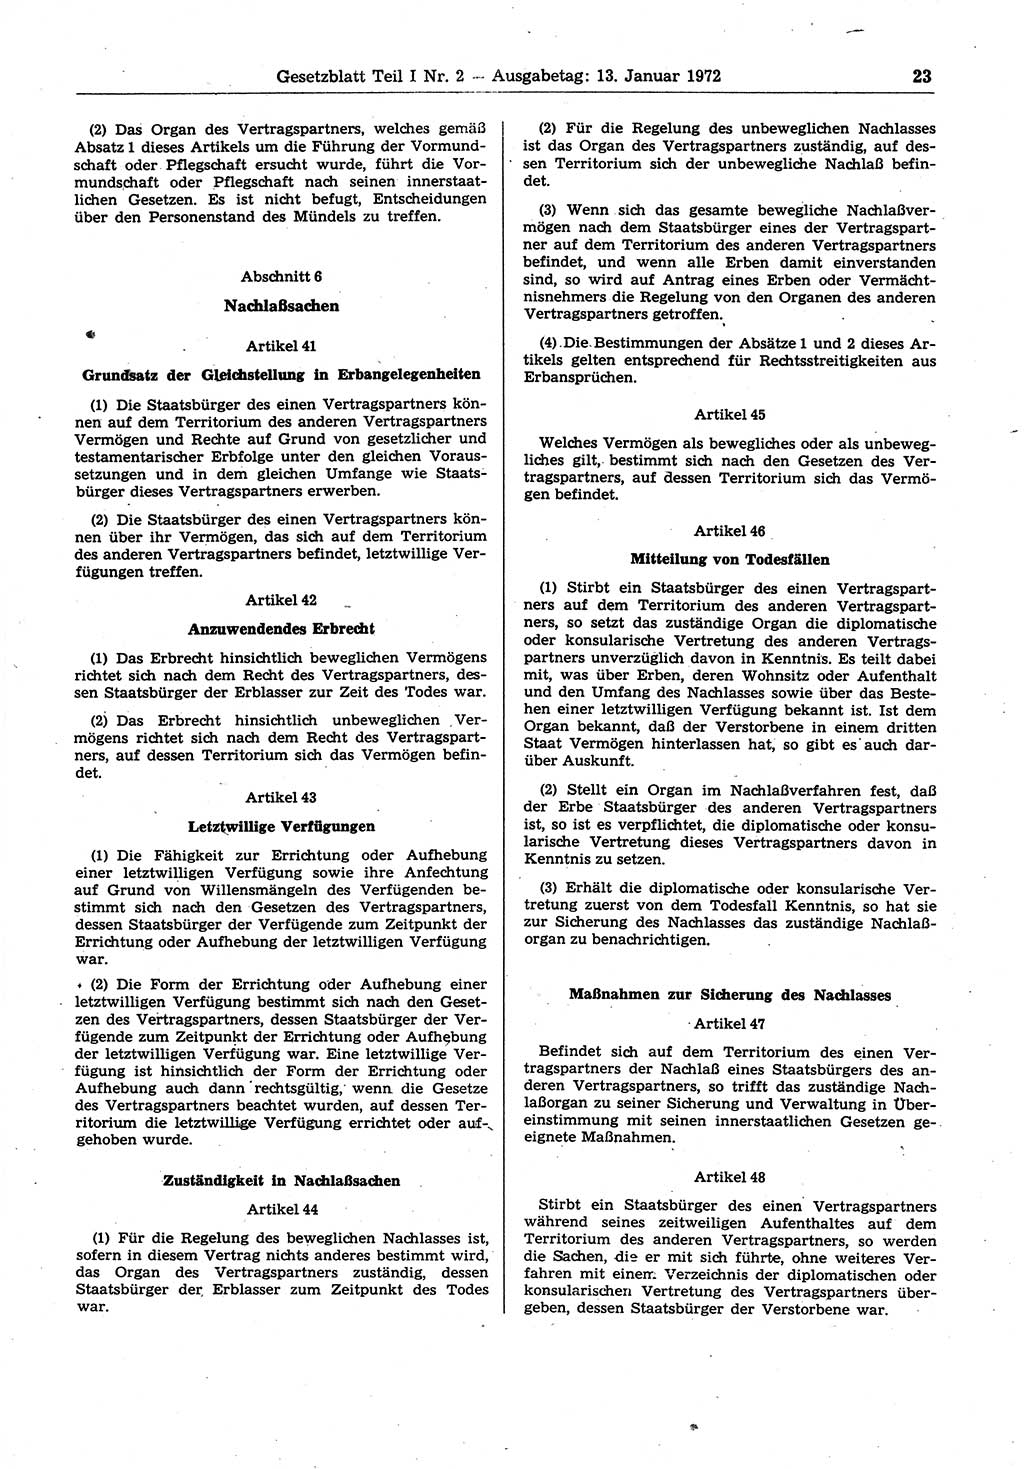 Gesetzblatt (GBl.) der Deutschen Demokratischen Republik (DDR) Teil Ⅰ 1972, Seite 23 (GBl. DDR Ⅰ 1972, S. 23)